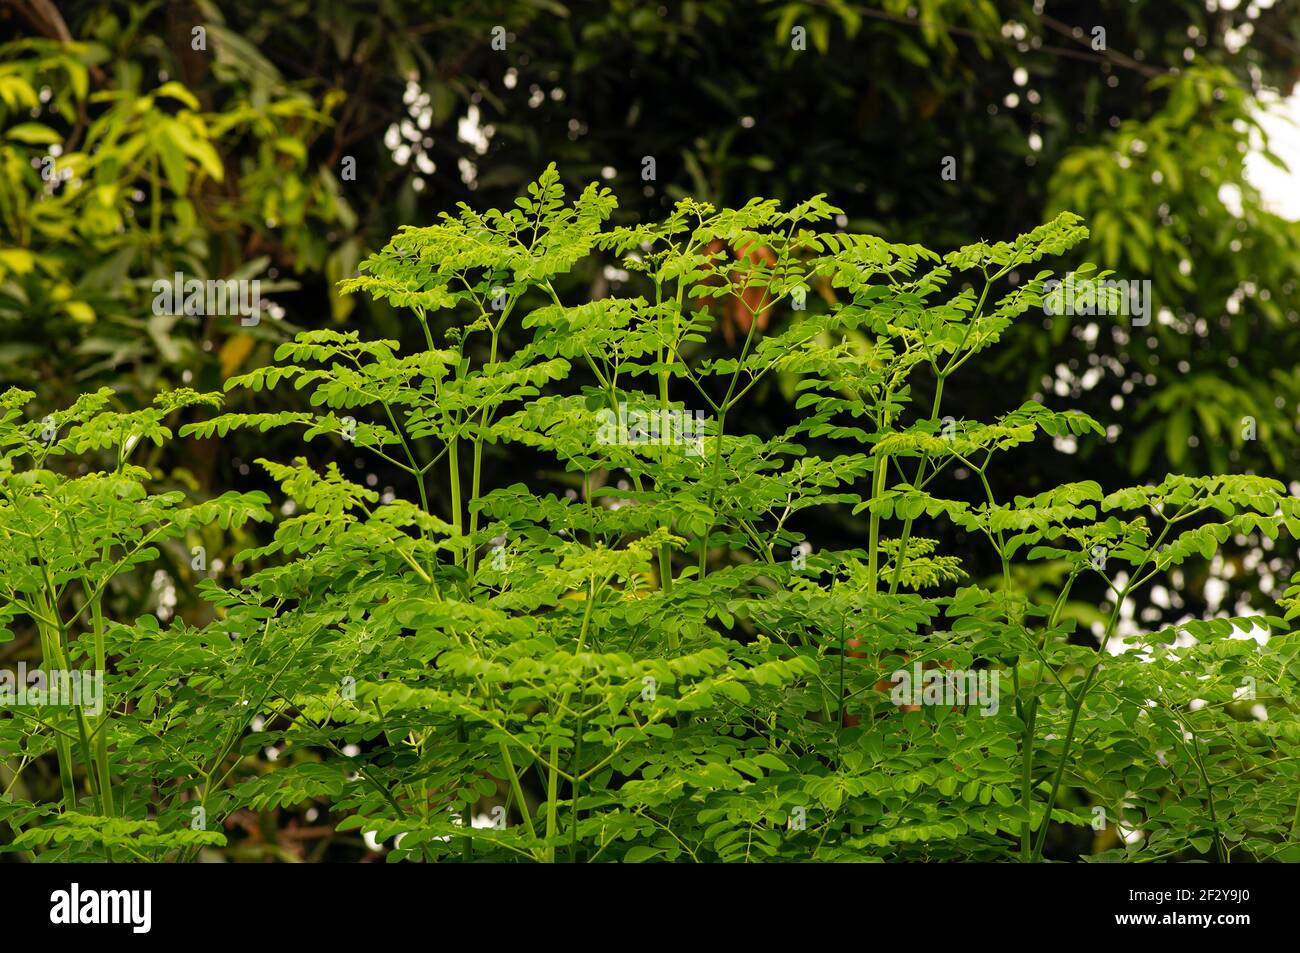 Kelor oder Drumstick Baum, Moringa oleifera grüne Blätter ausgewählten Fokus, mit gemeinsamen Namen: Meerrettich Baum, und ben Ölbaum oder Benzolive Baum Stockfoto